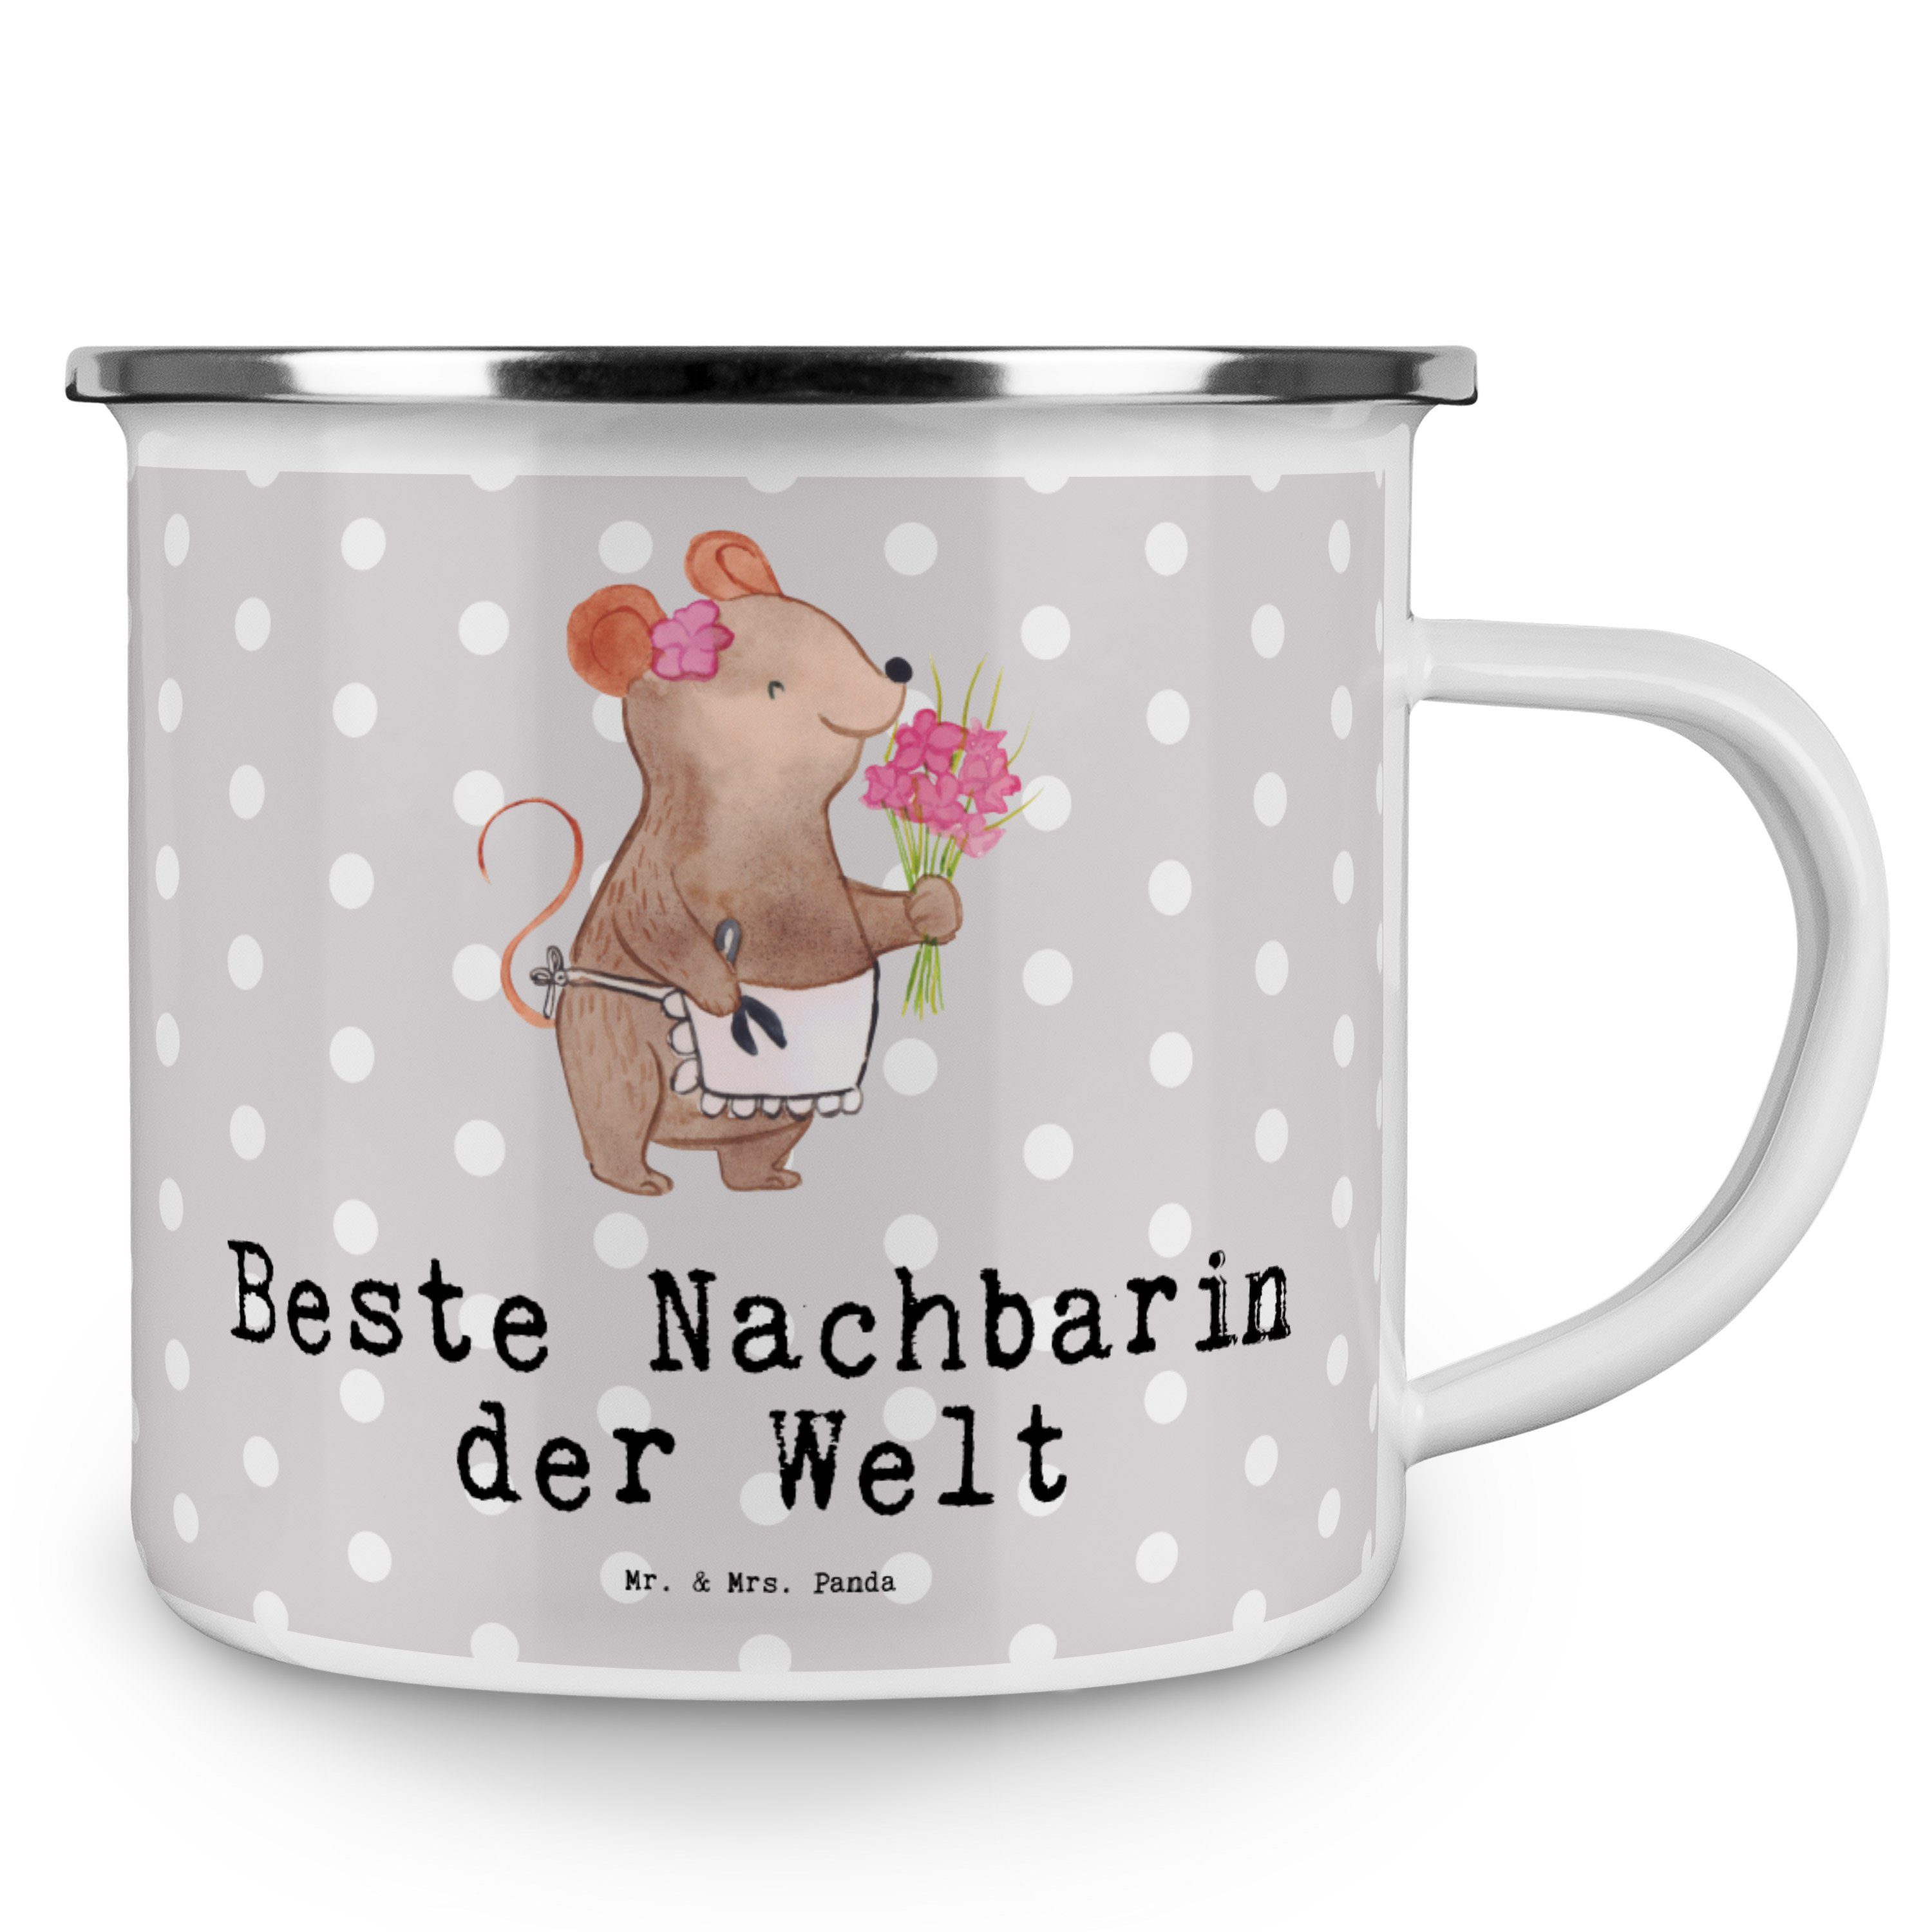 Mr. & Mrs. Welt - Pastell Mitbringsel, Beste der Grau Panda Nachbarin Geschenk, - Emaille Becher Maus